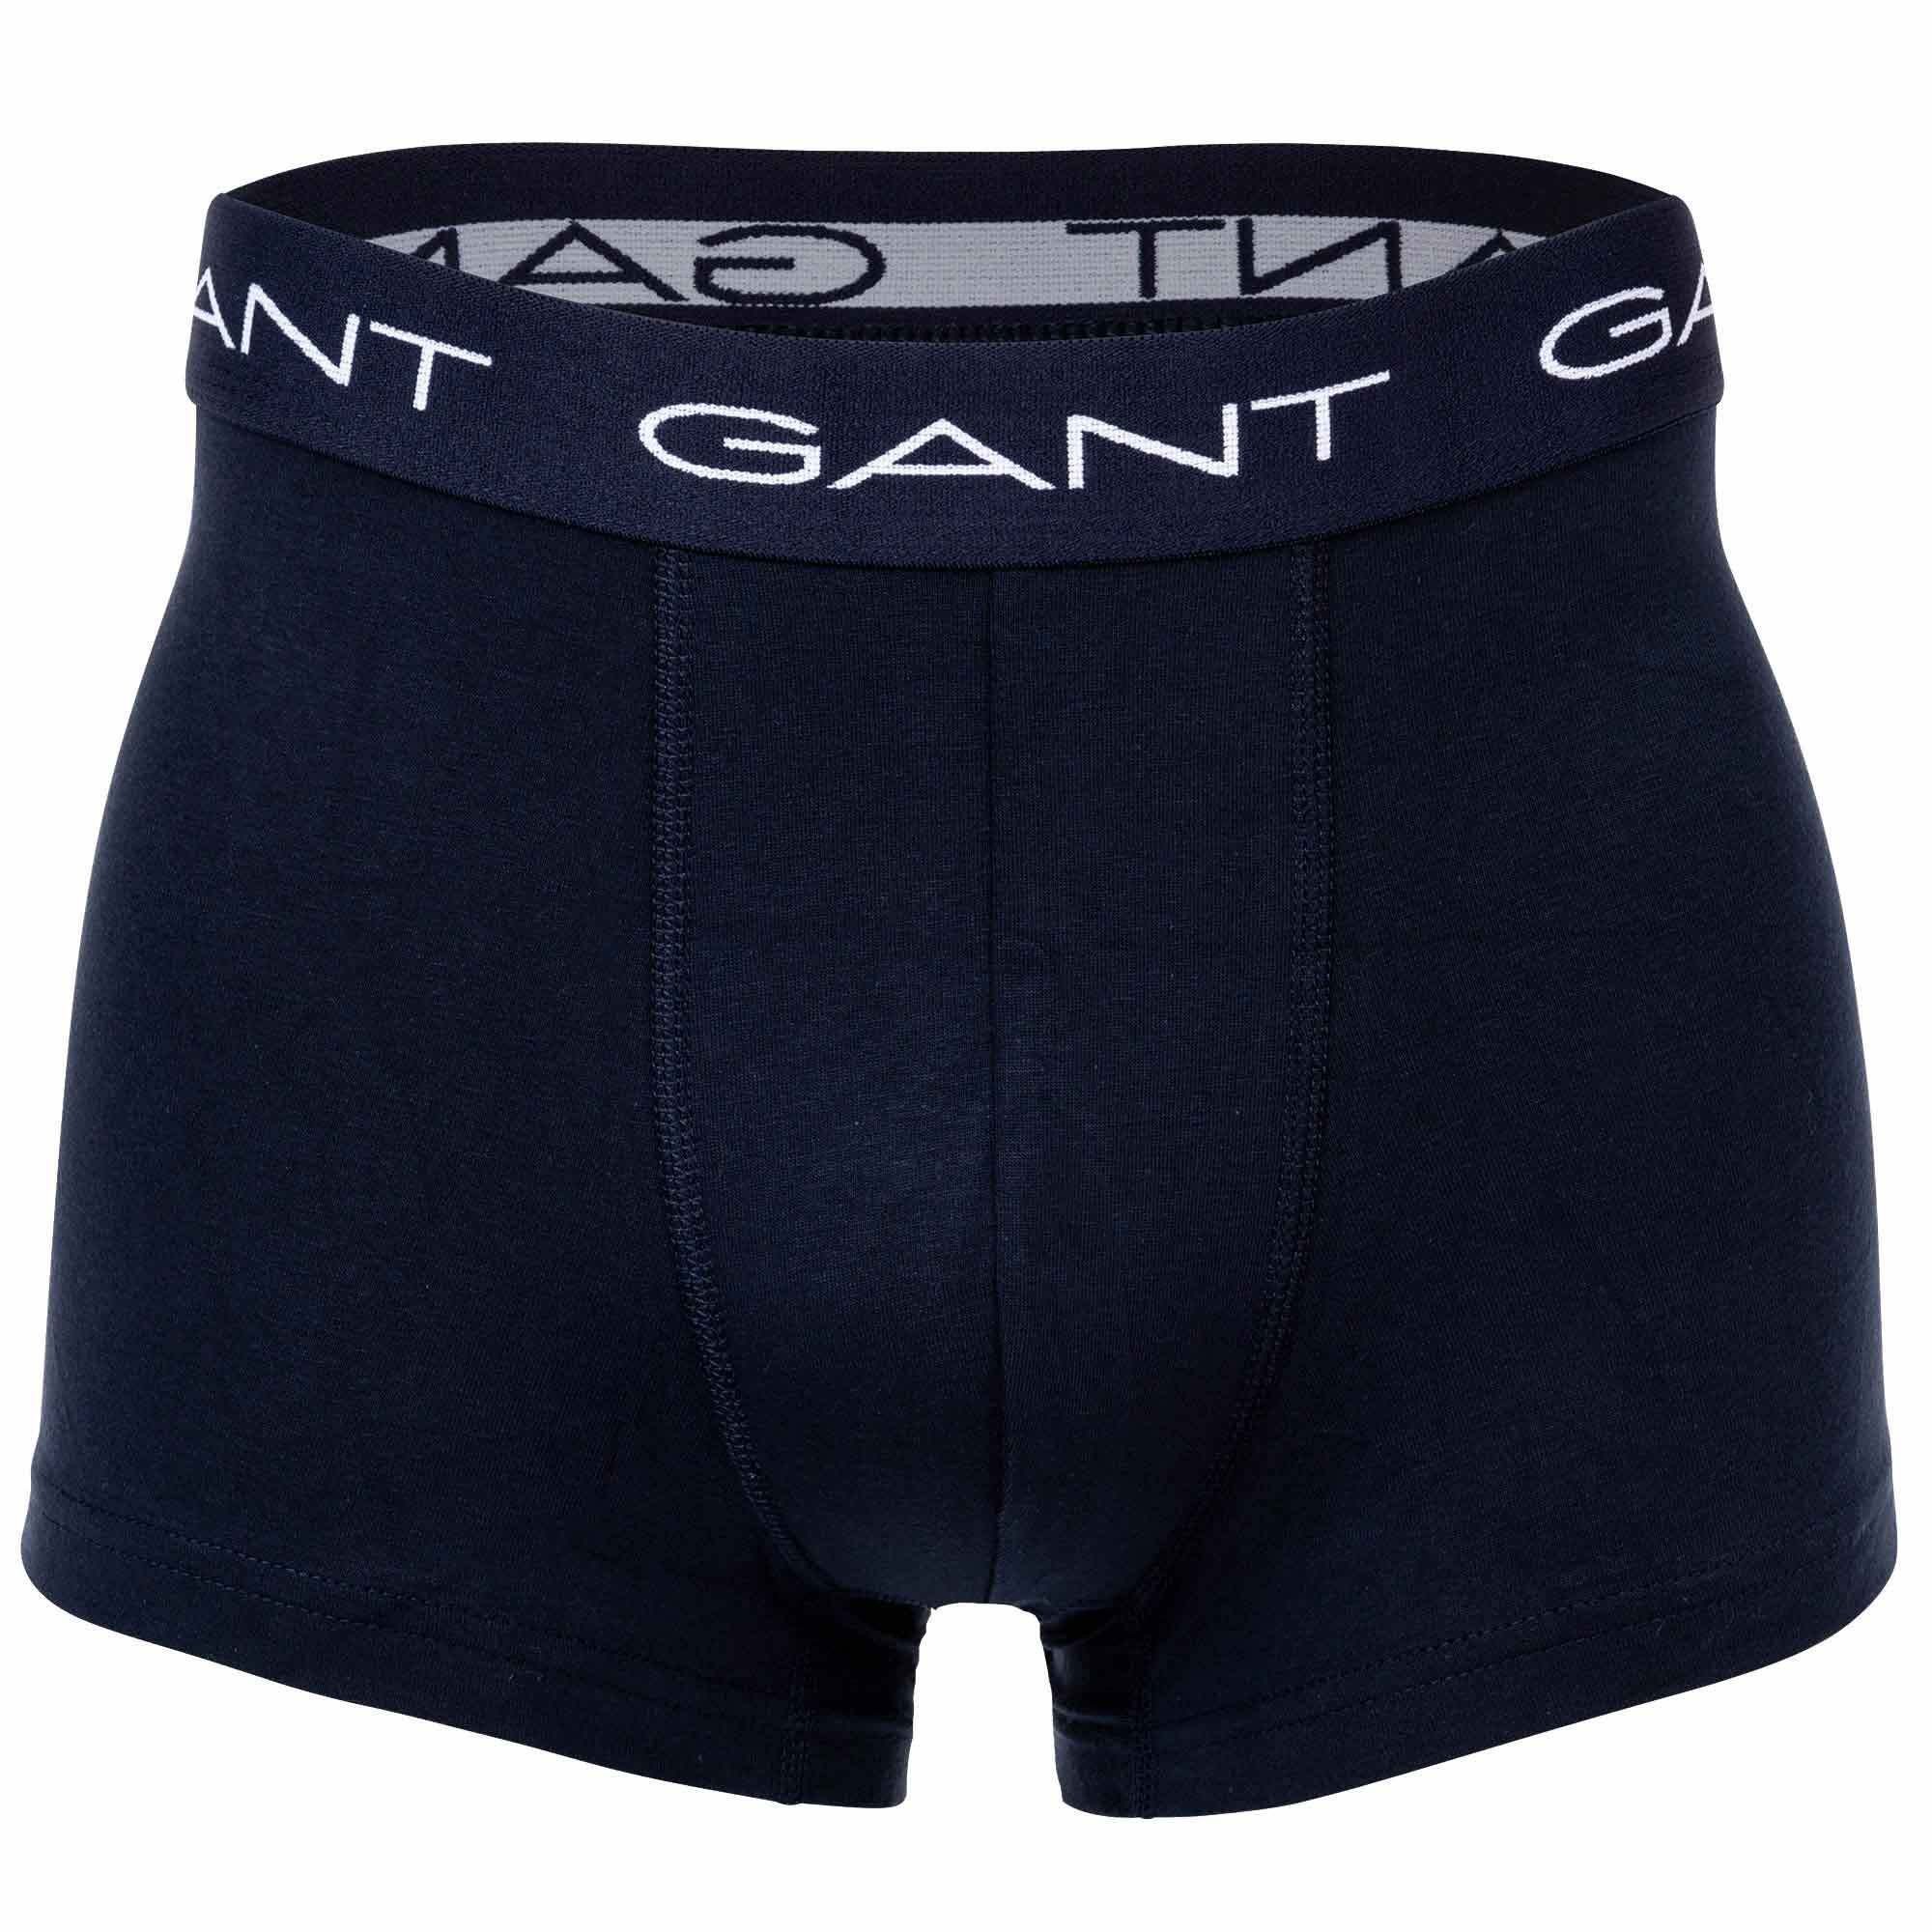 Rot Trunks - Stripe Boxer Shorts, Herren 3er Gant Boxer Pack